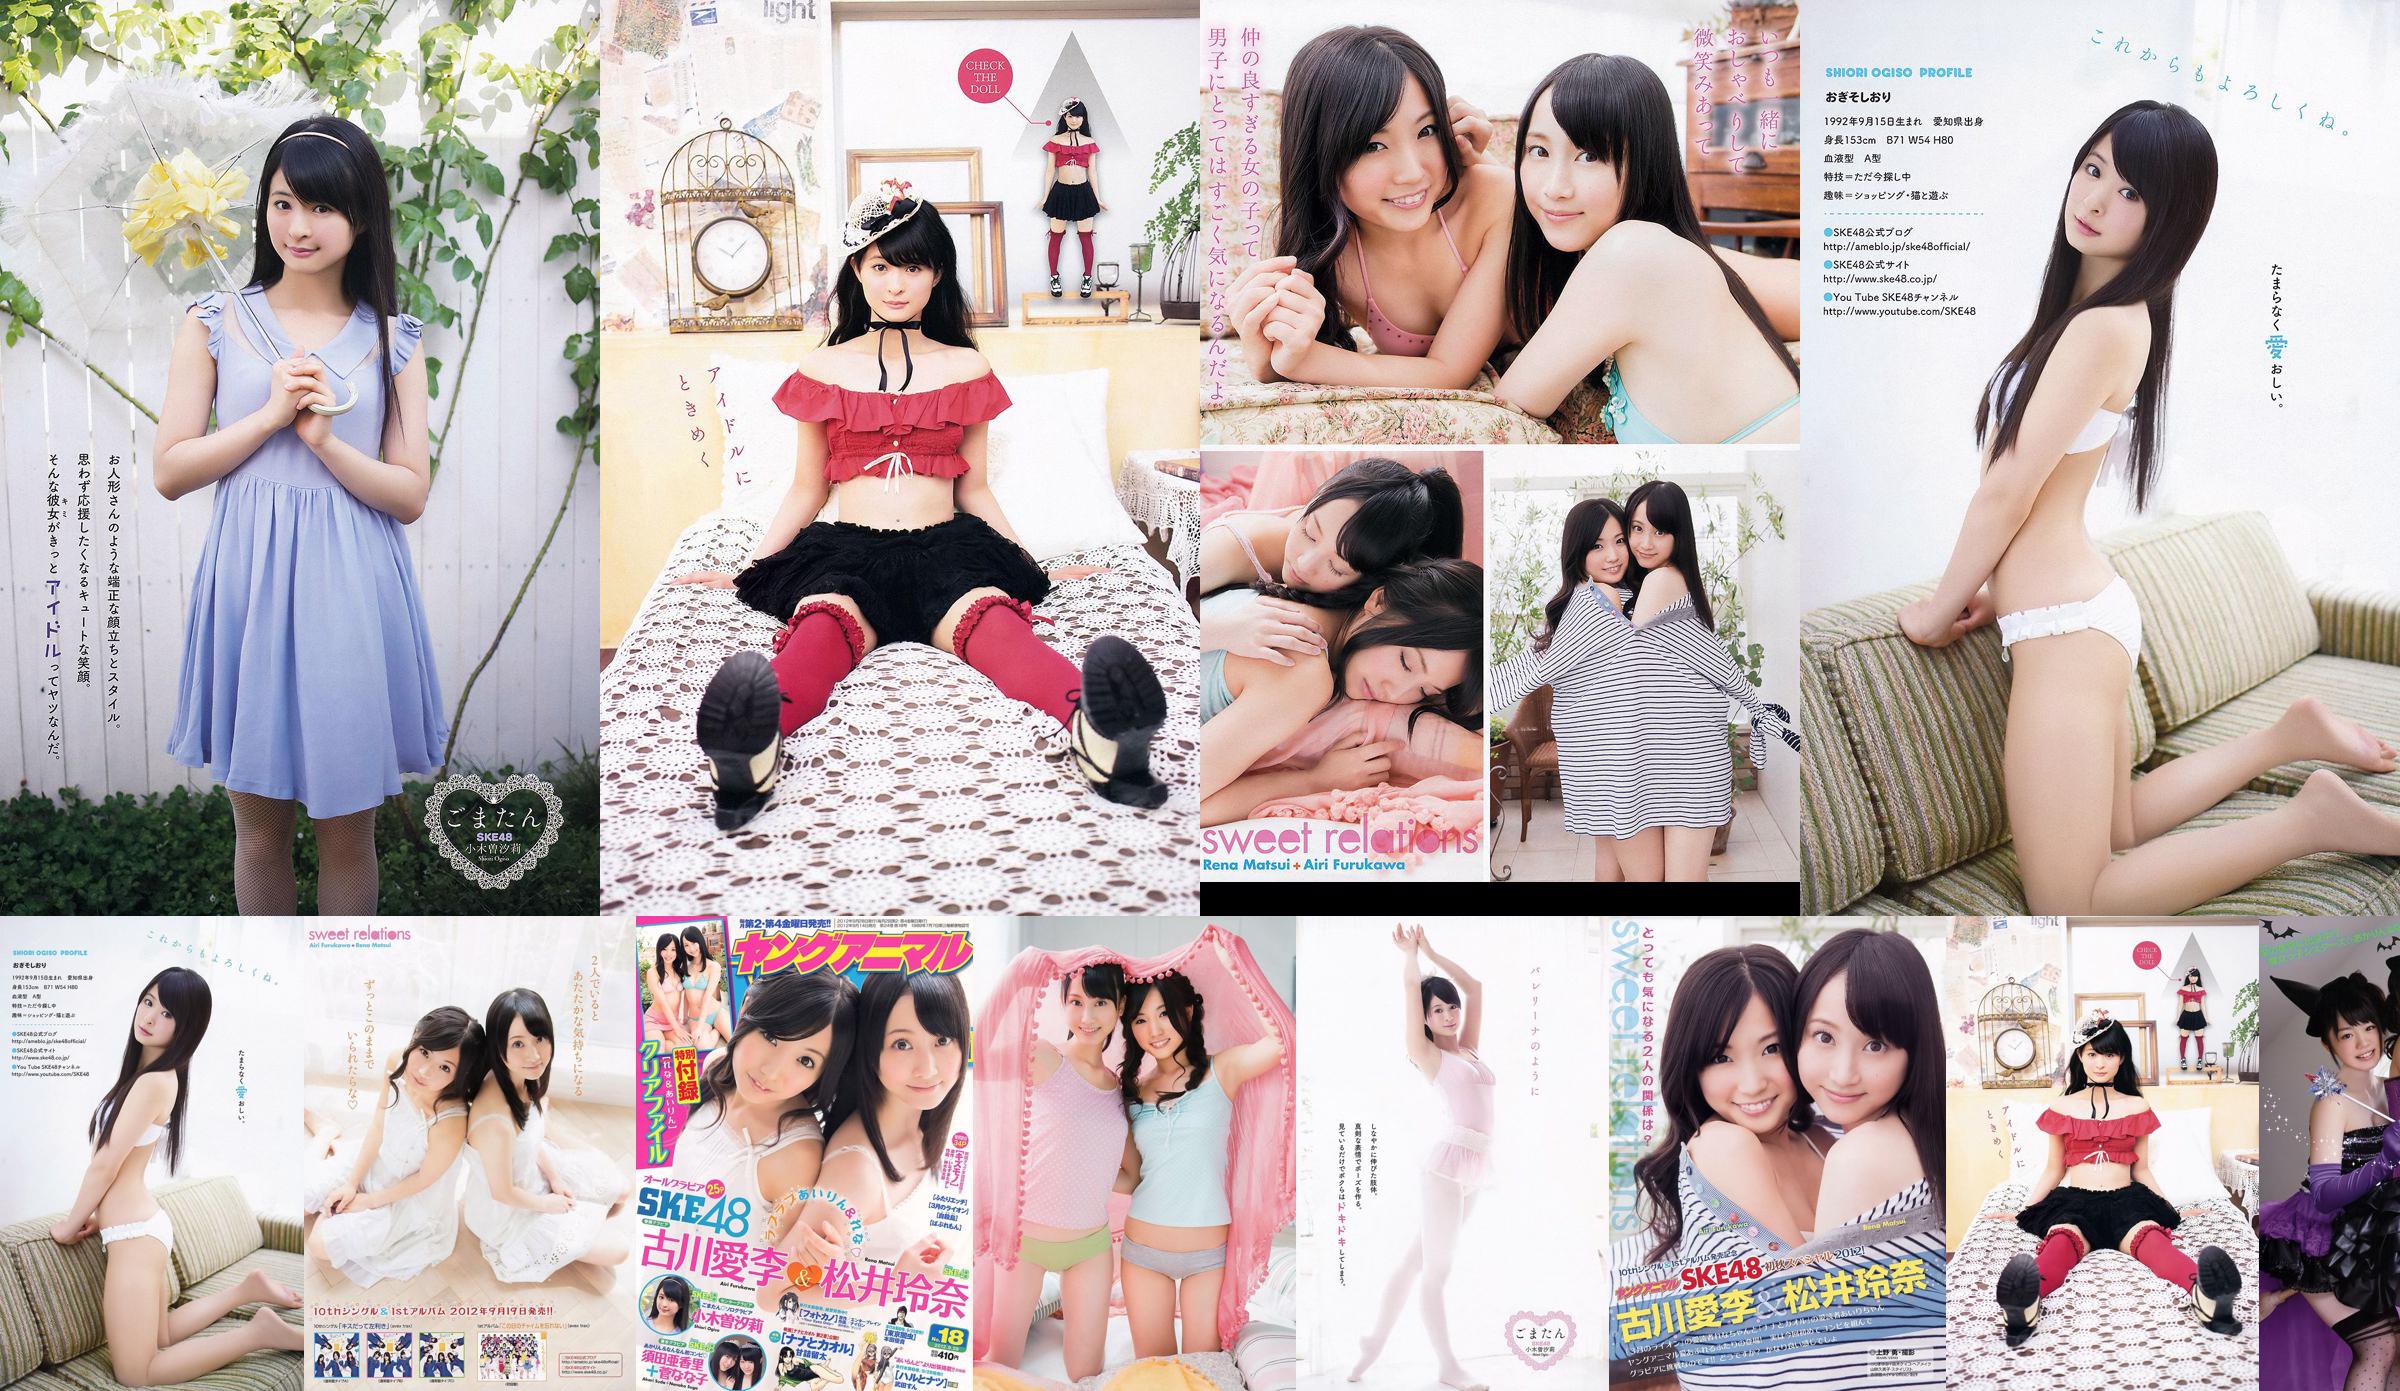 Ai Li Furukawa, Rena Matsui, Sasa Ogi, Aikari Suda [Young Animal] 2012 No.18 Photo Magazine No.9a3748 หน้า 1